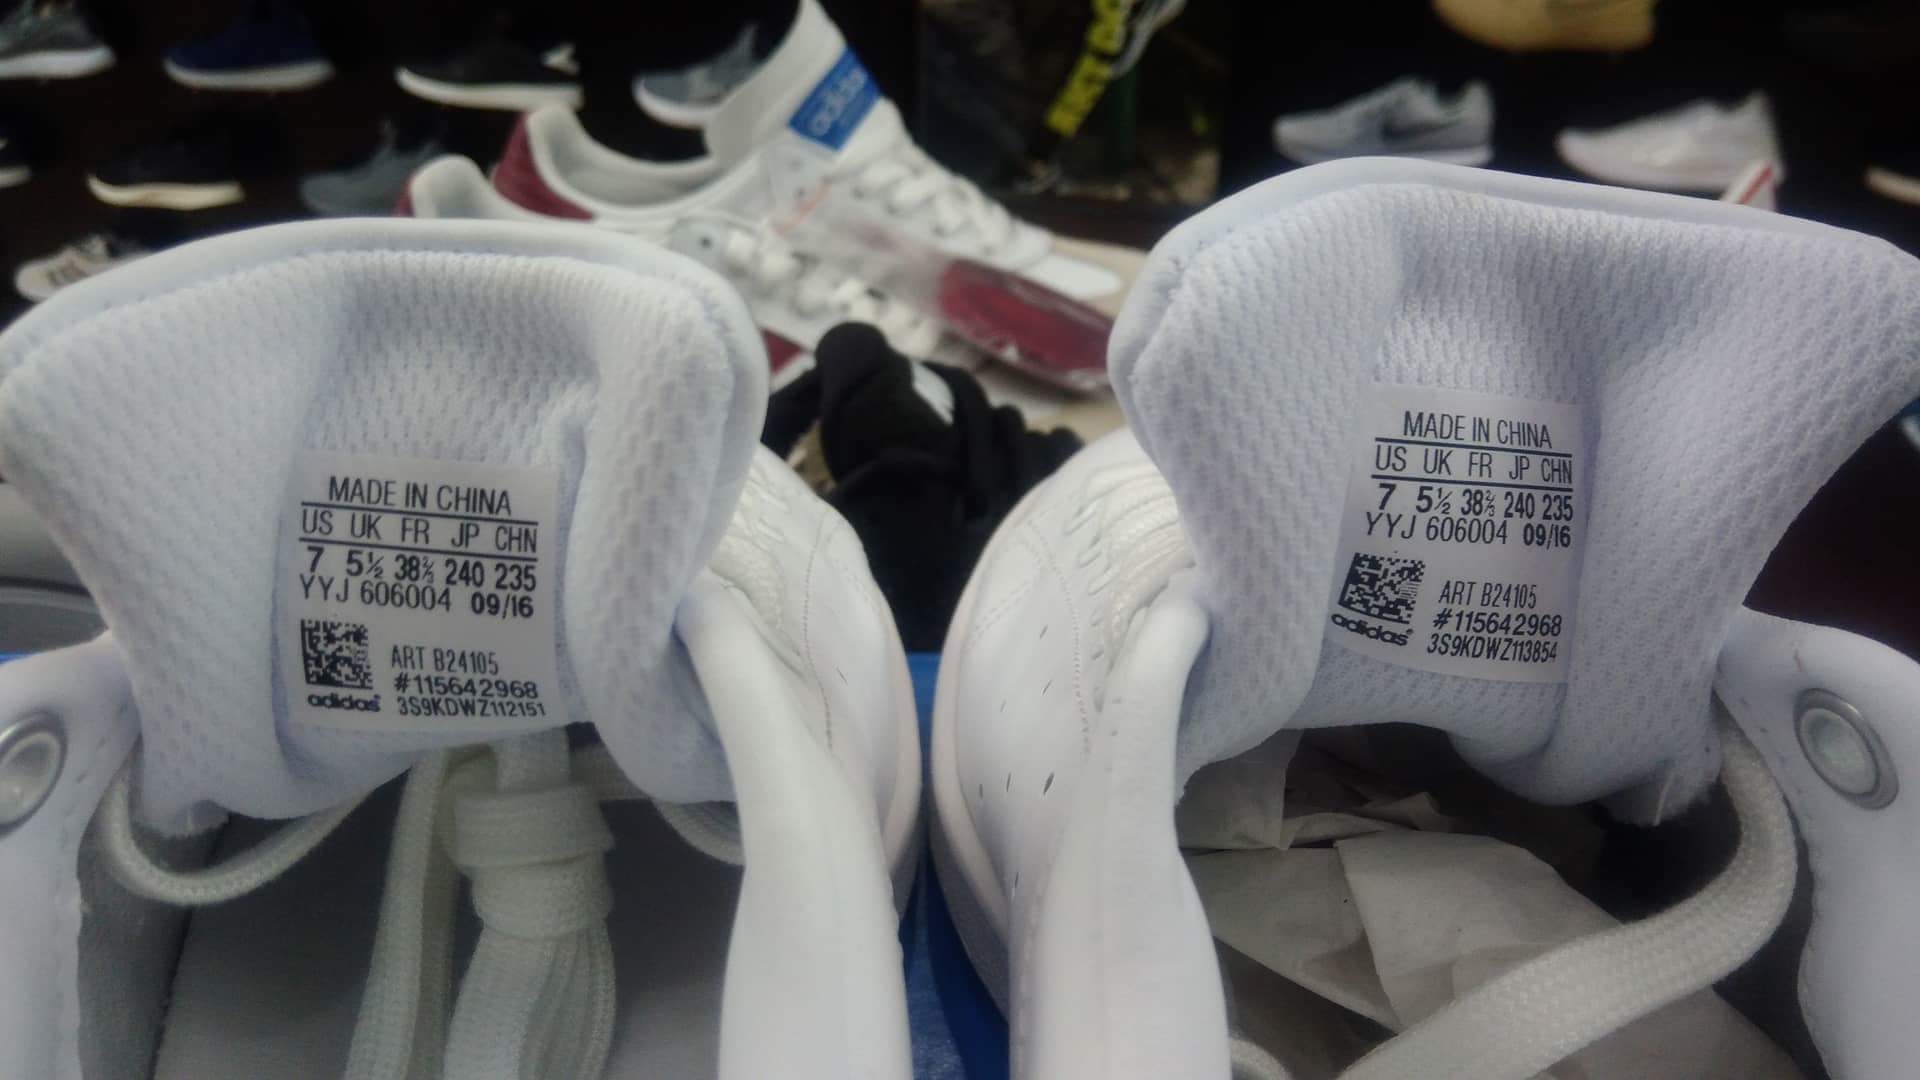 Giày chính hãng mang mác “made in China” có thực sự là giày fake?